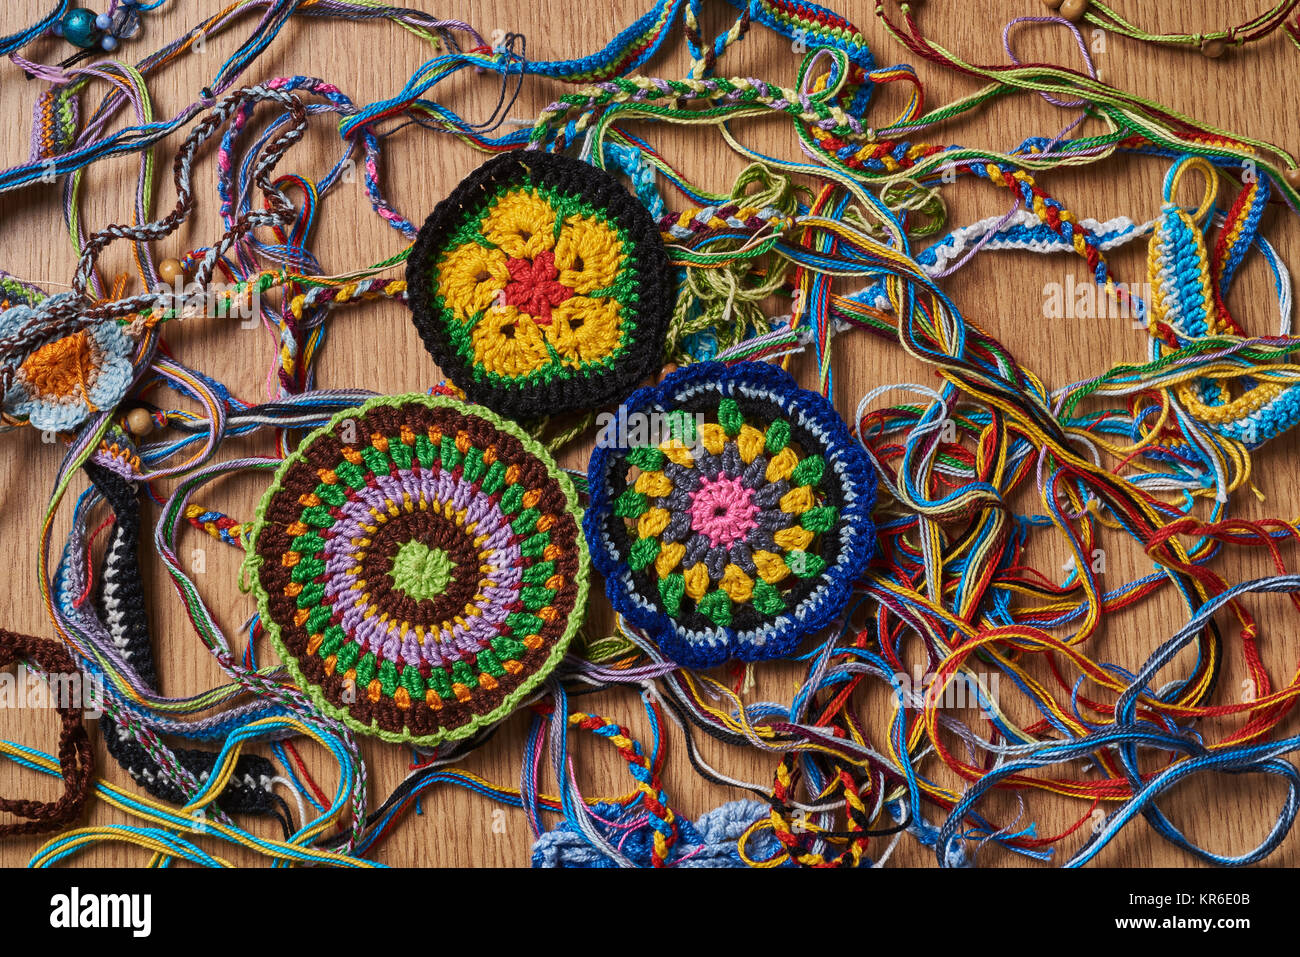 Différents types de bracelets colorés tricotés et boucles d'sont chaotiquement allongé sur la table. En bas à gauche il y a trois grosses étoffes amule Banque D'Images